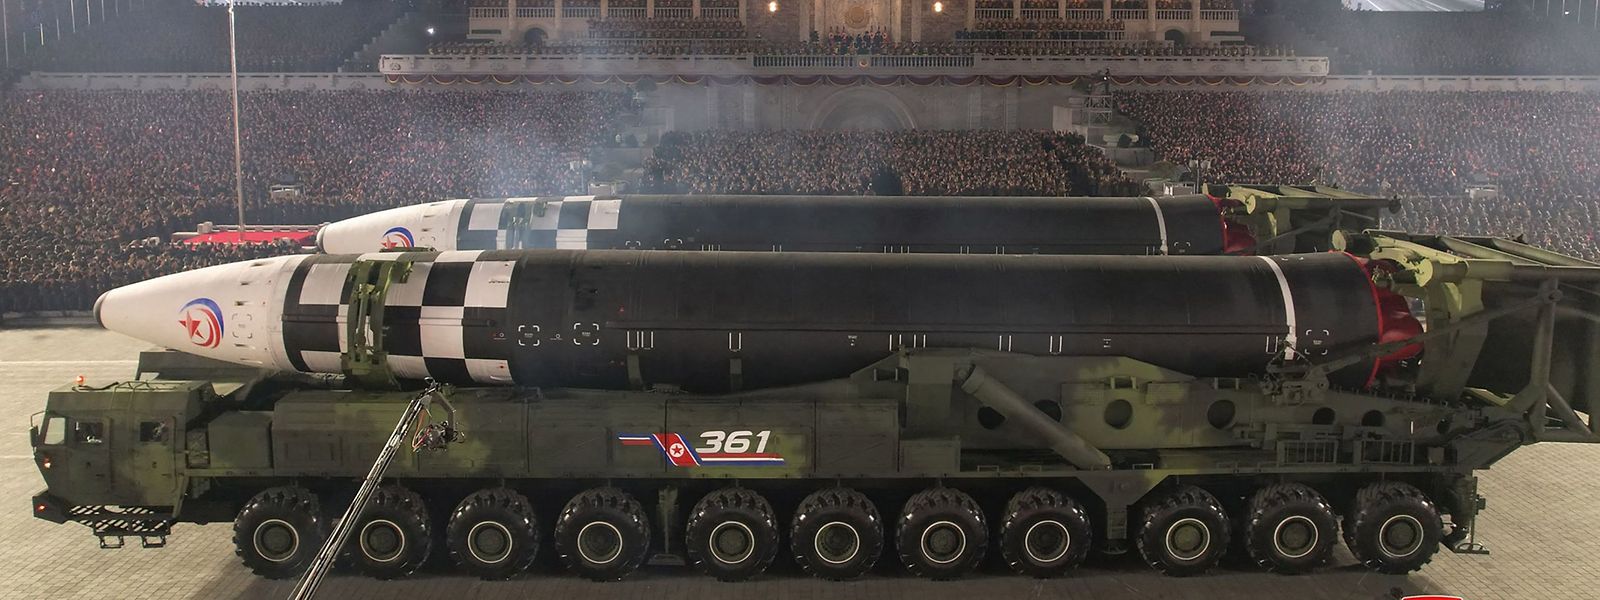 Experten gingen davon aus, dass Nordkorea zum 75. Gründungstag seiner Streitkräfte auch neuartige Raketen vorgeführt hat.